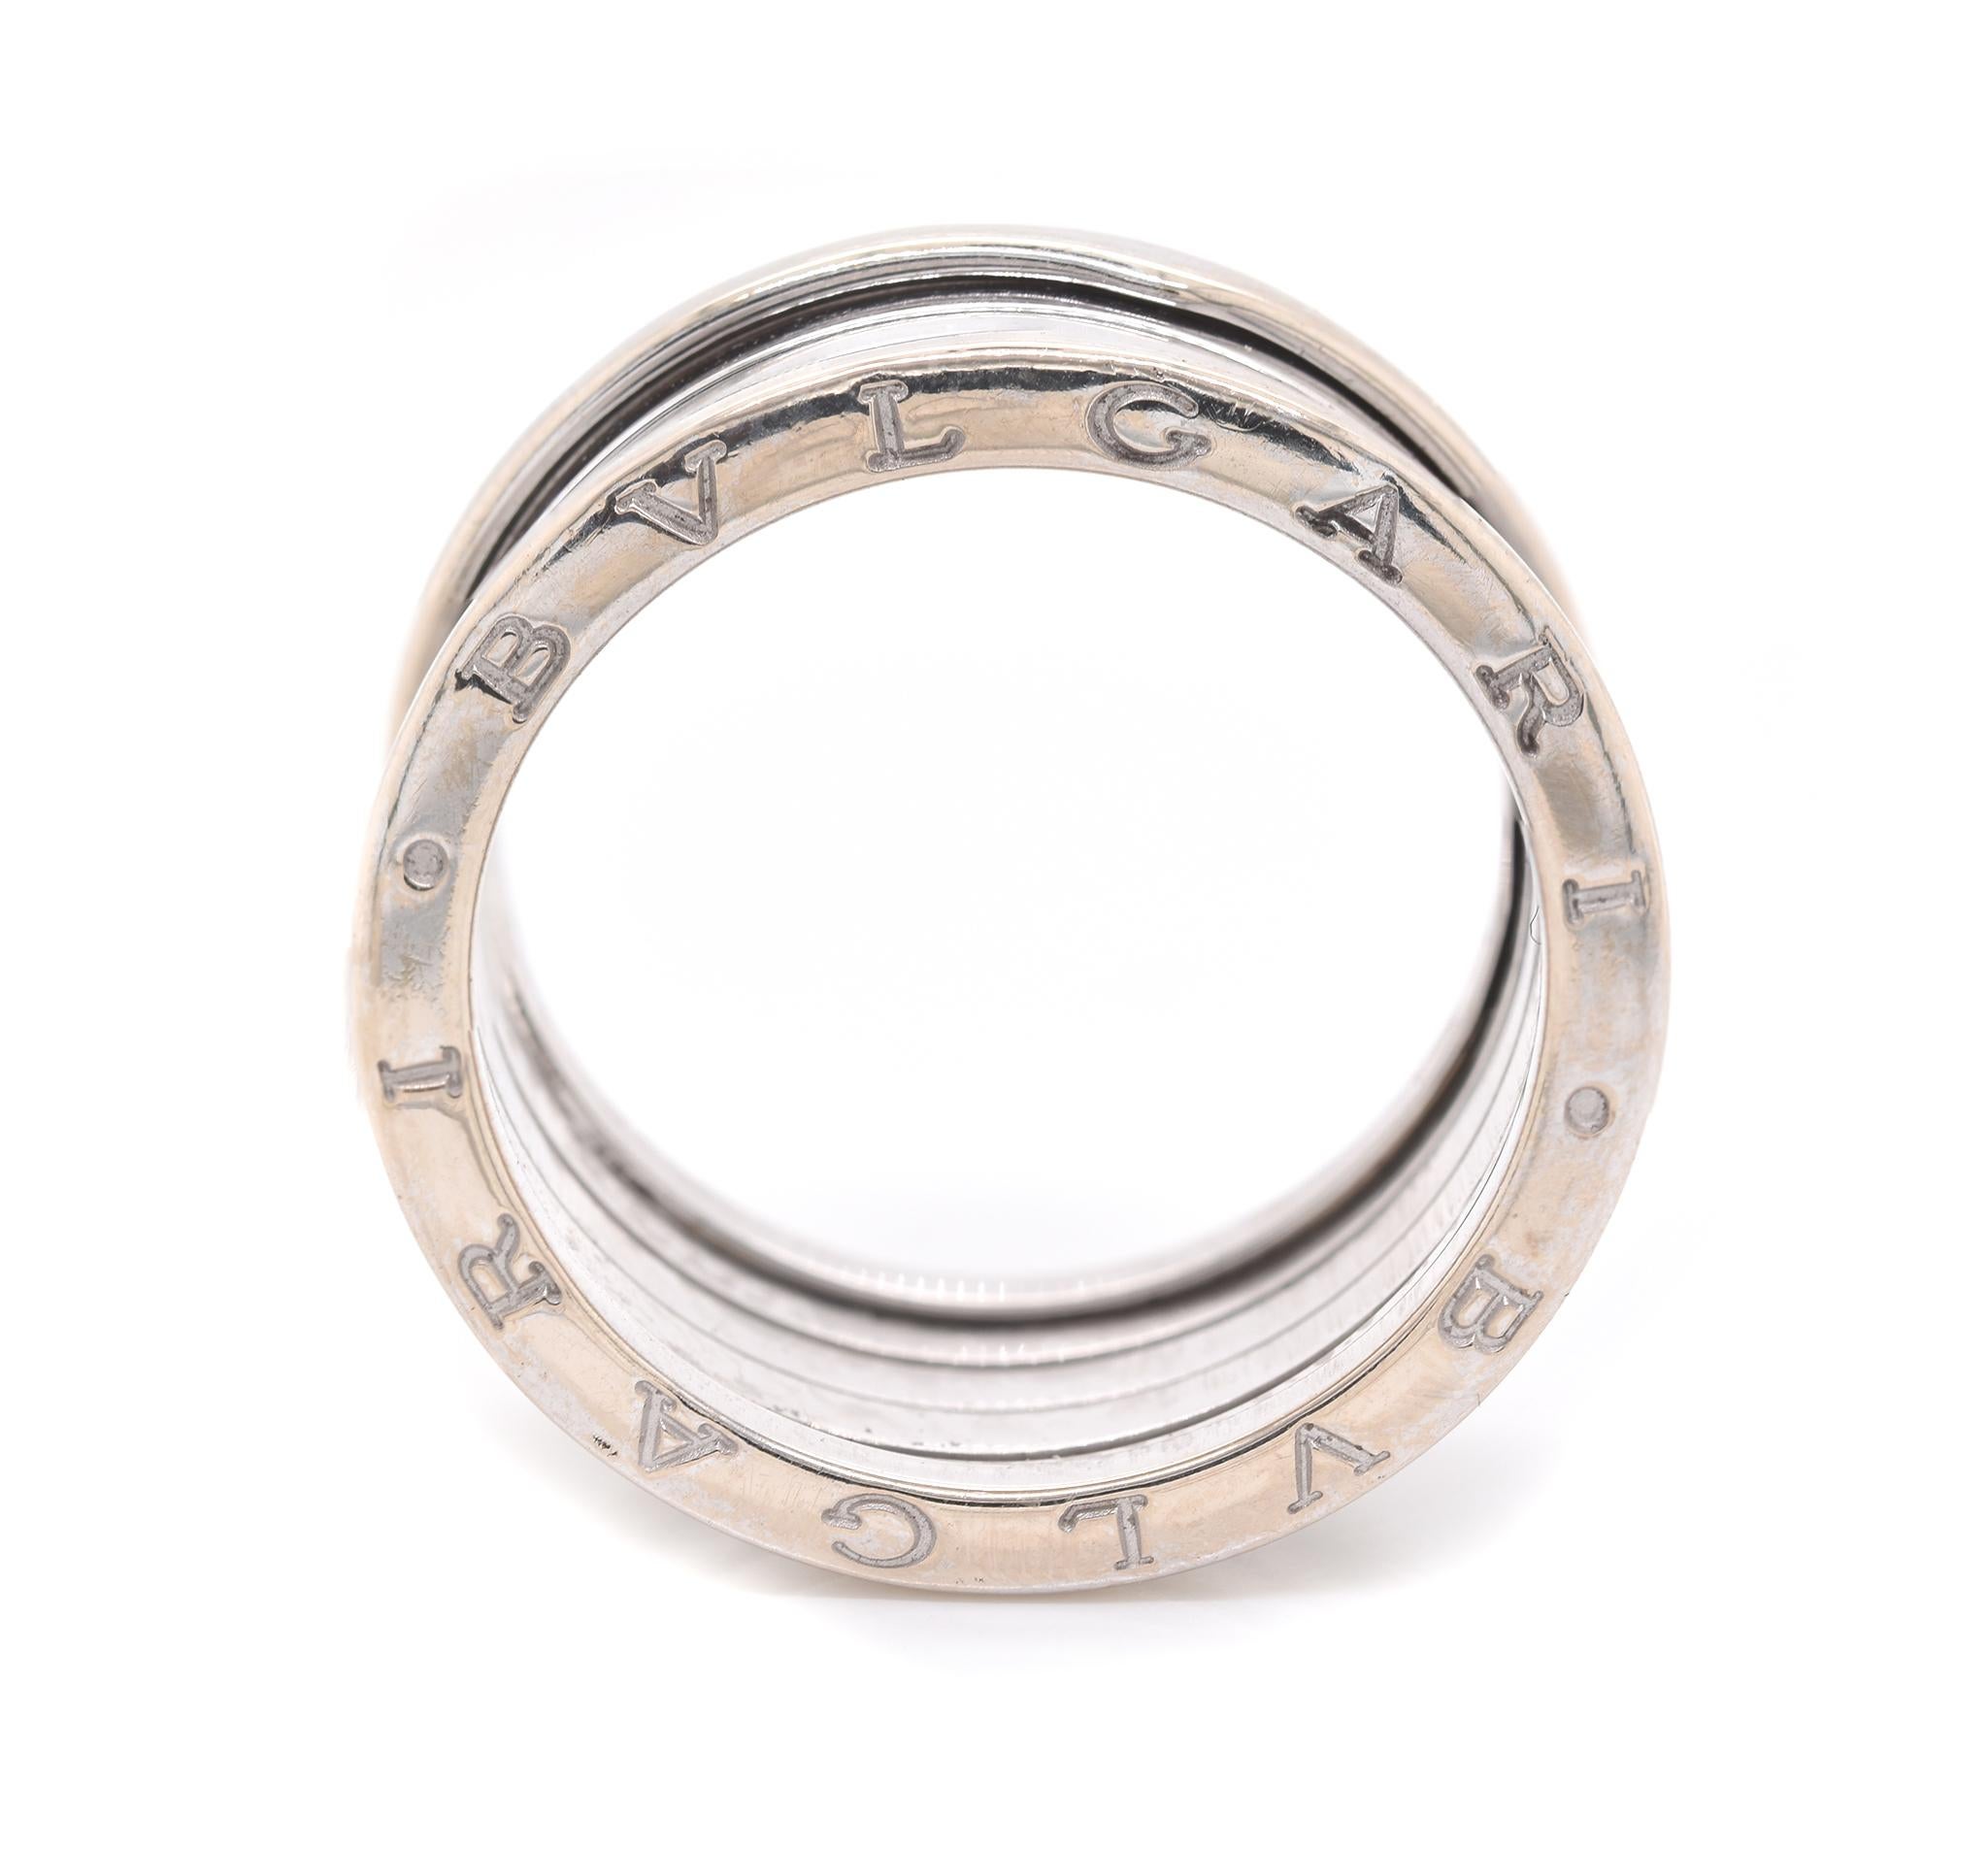 Design/One Bulgari
Matériau : Or blanc 18K
Dimensions : l'anneau mesure 11,25 mm de large
Taille : 11
Poids : 13,95 grammes
